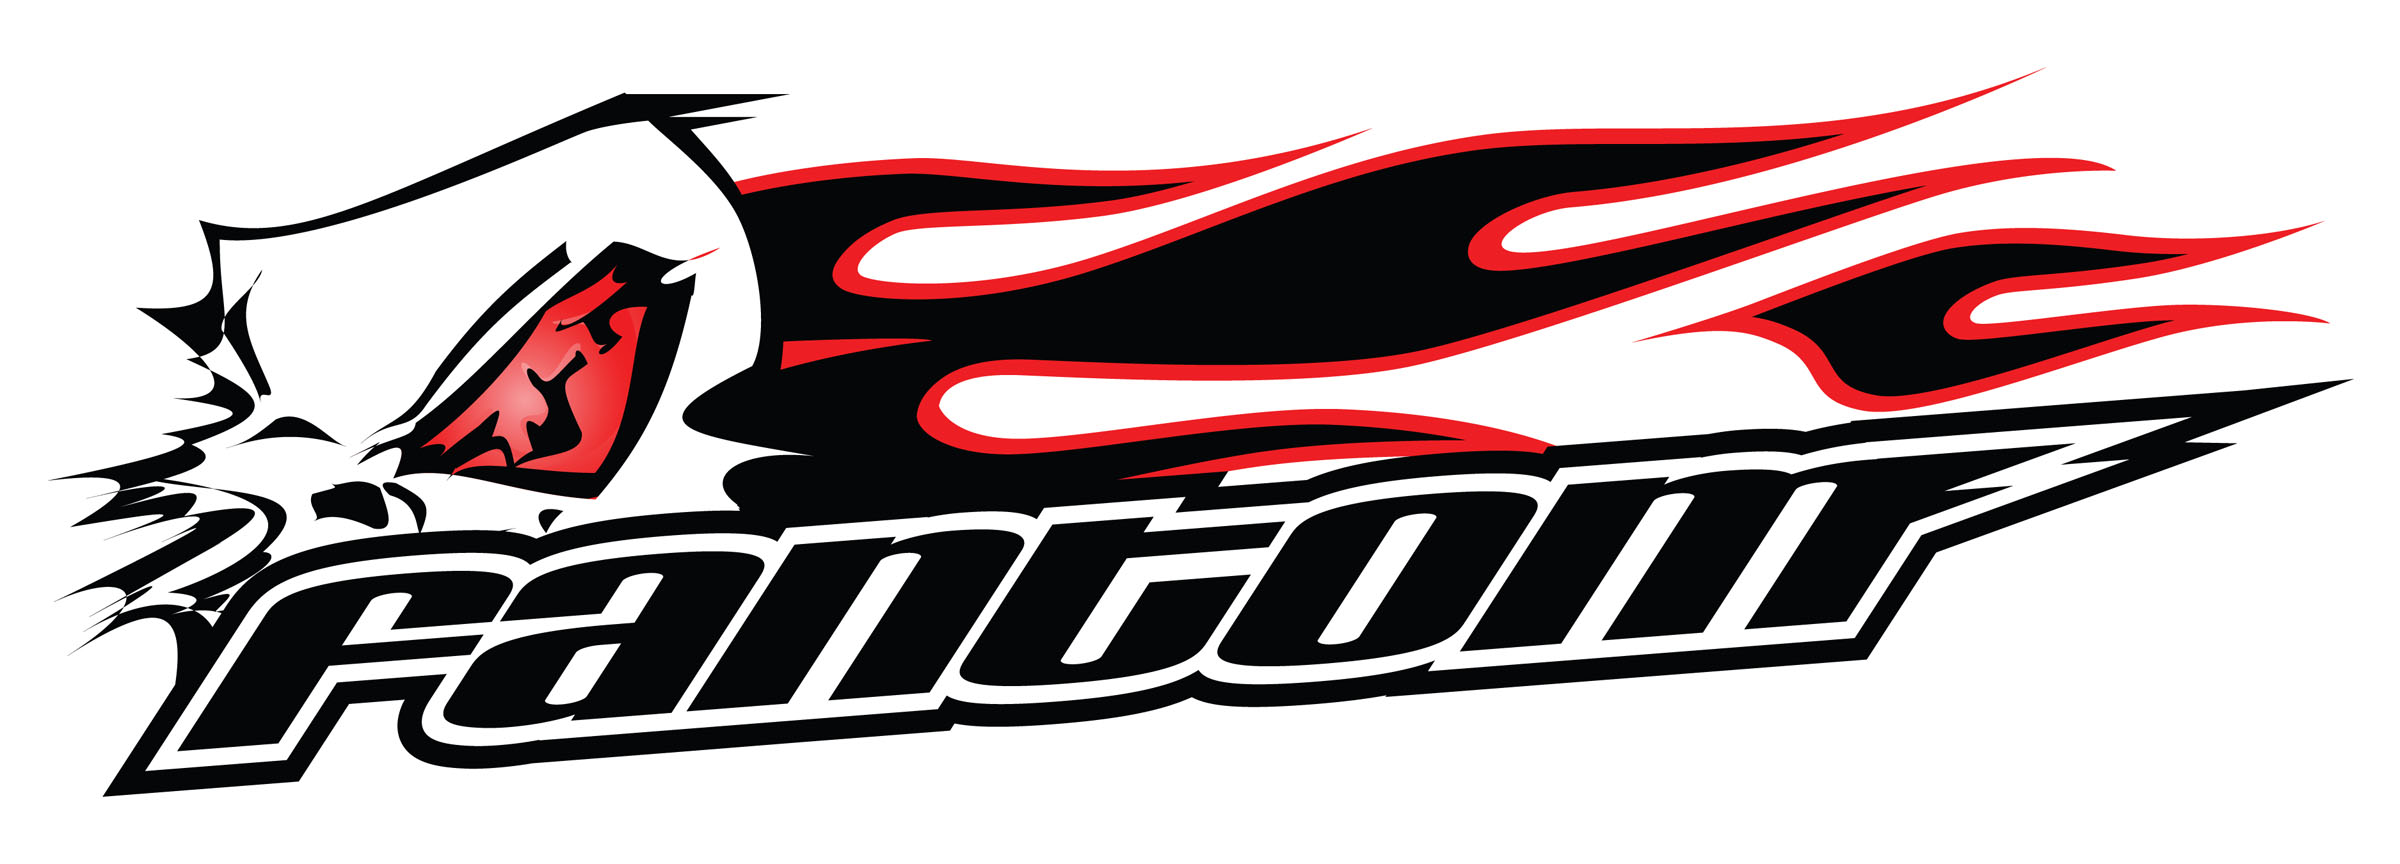 Racing Team Logos